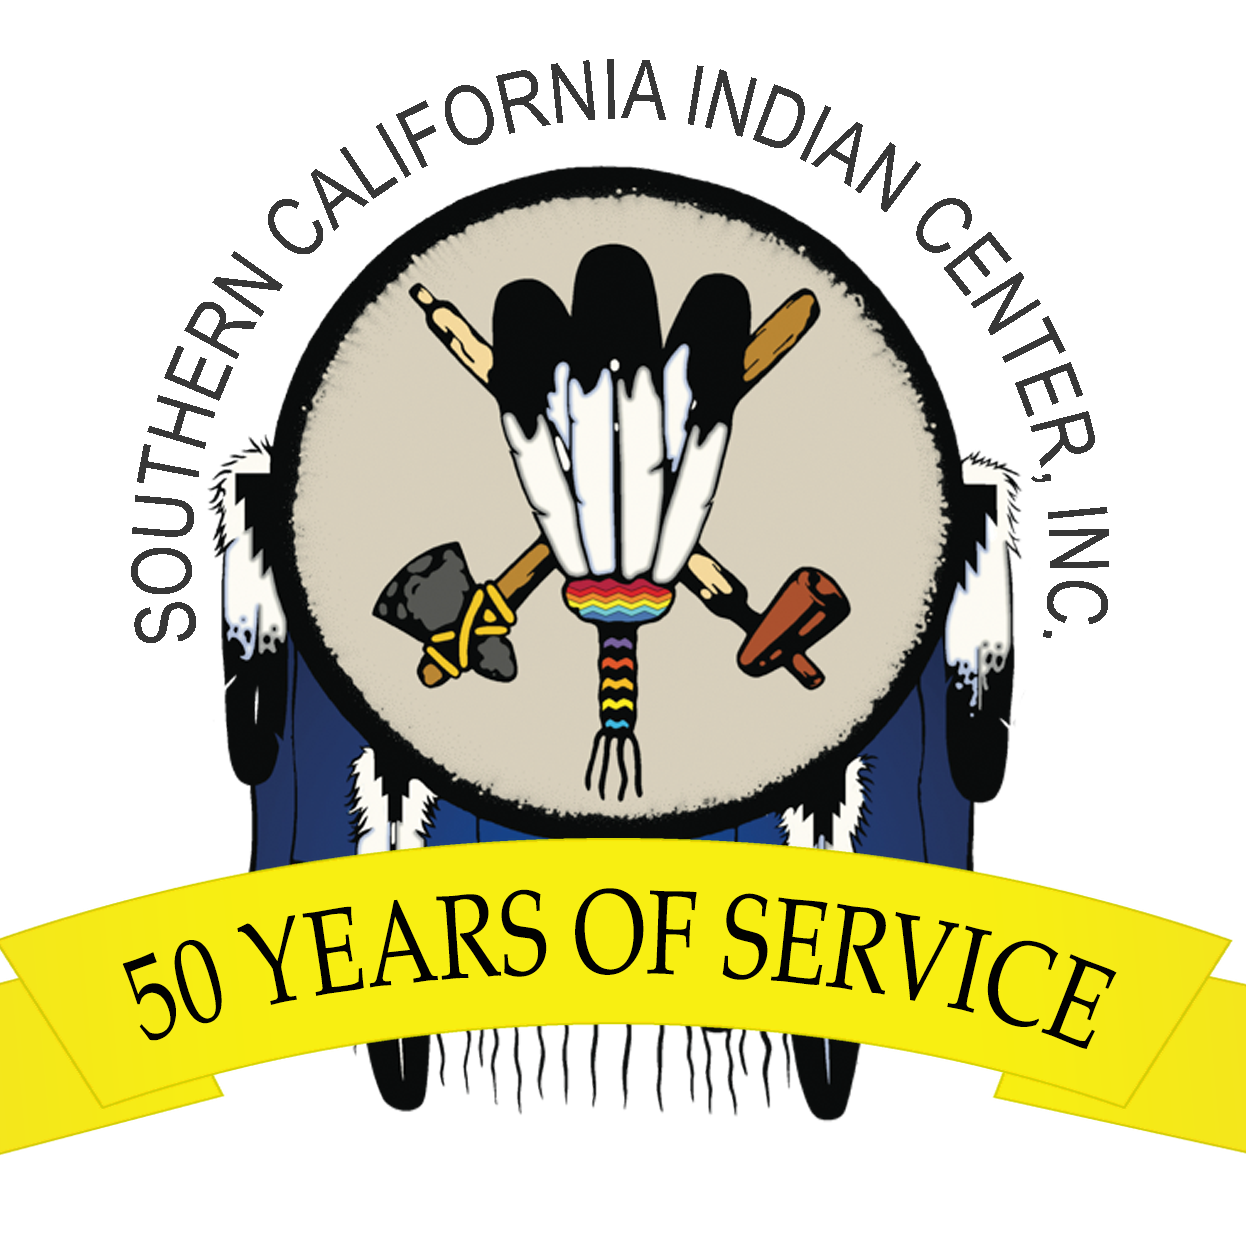 Native American Organization in Sacramento California - Southern California Indian Center, Inc.